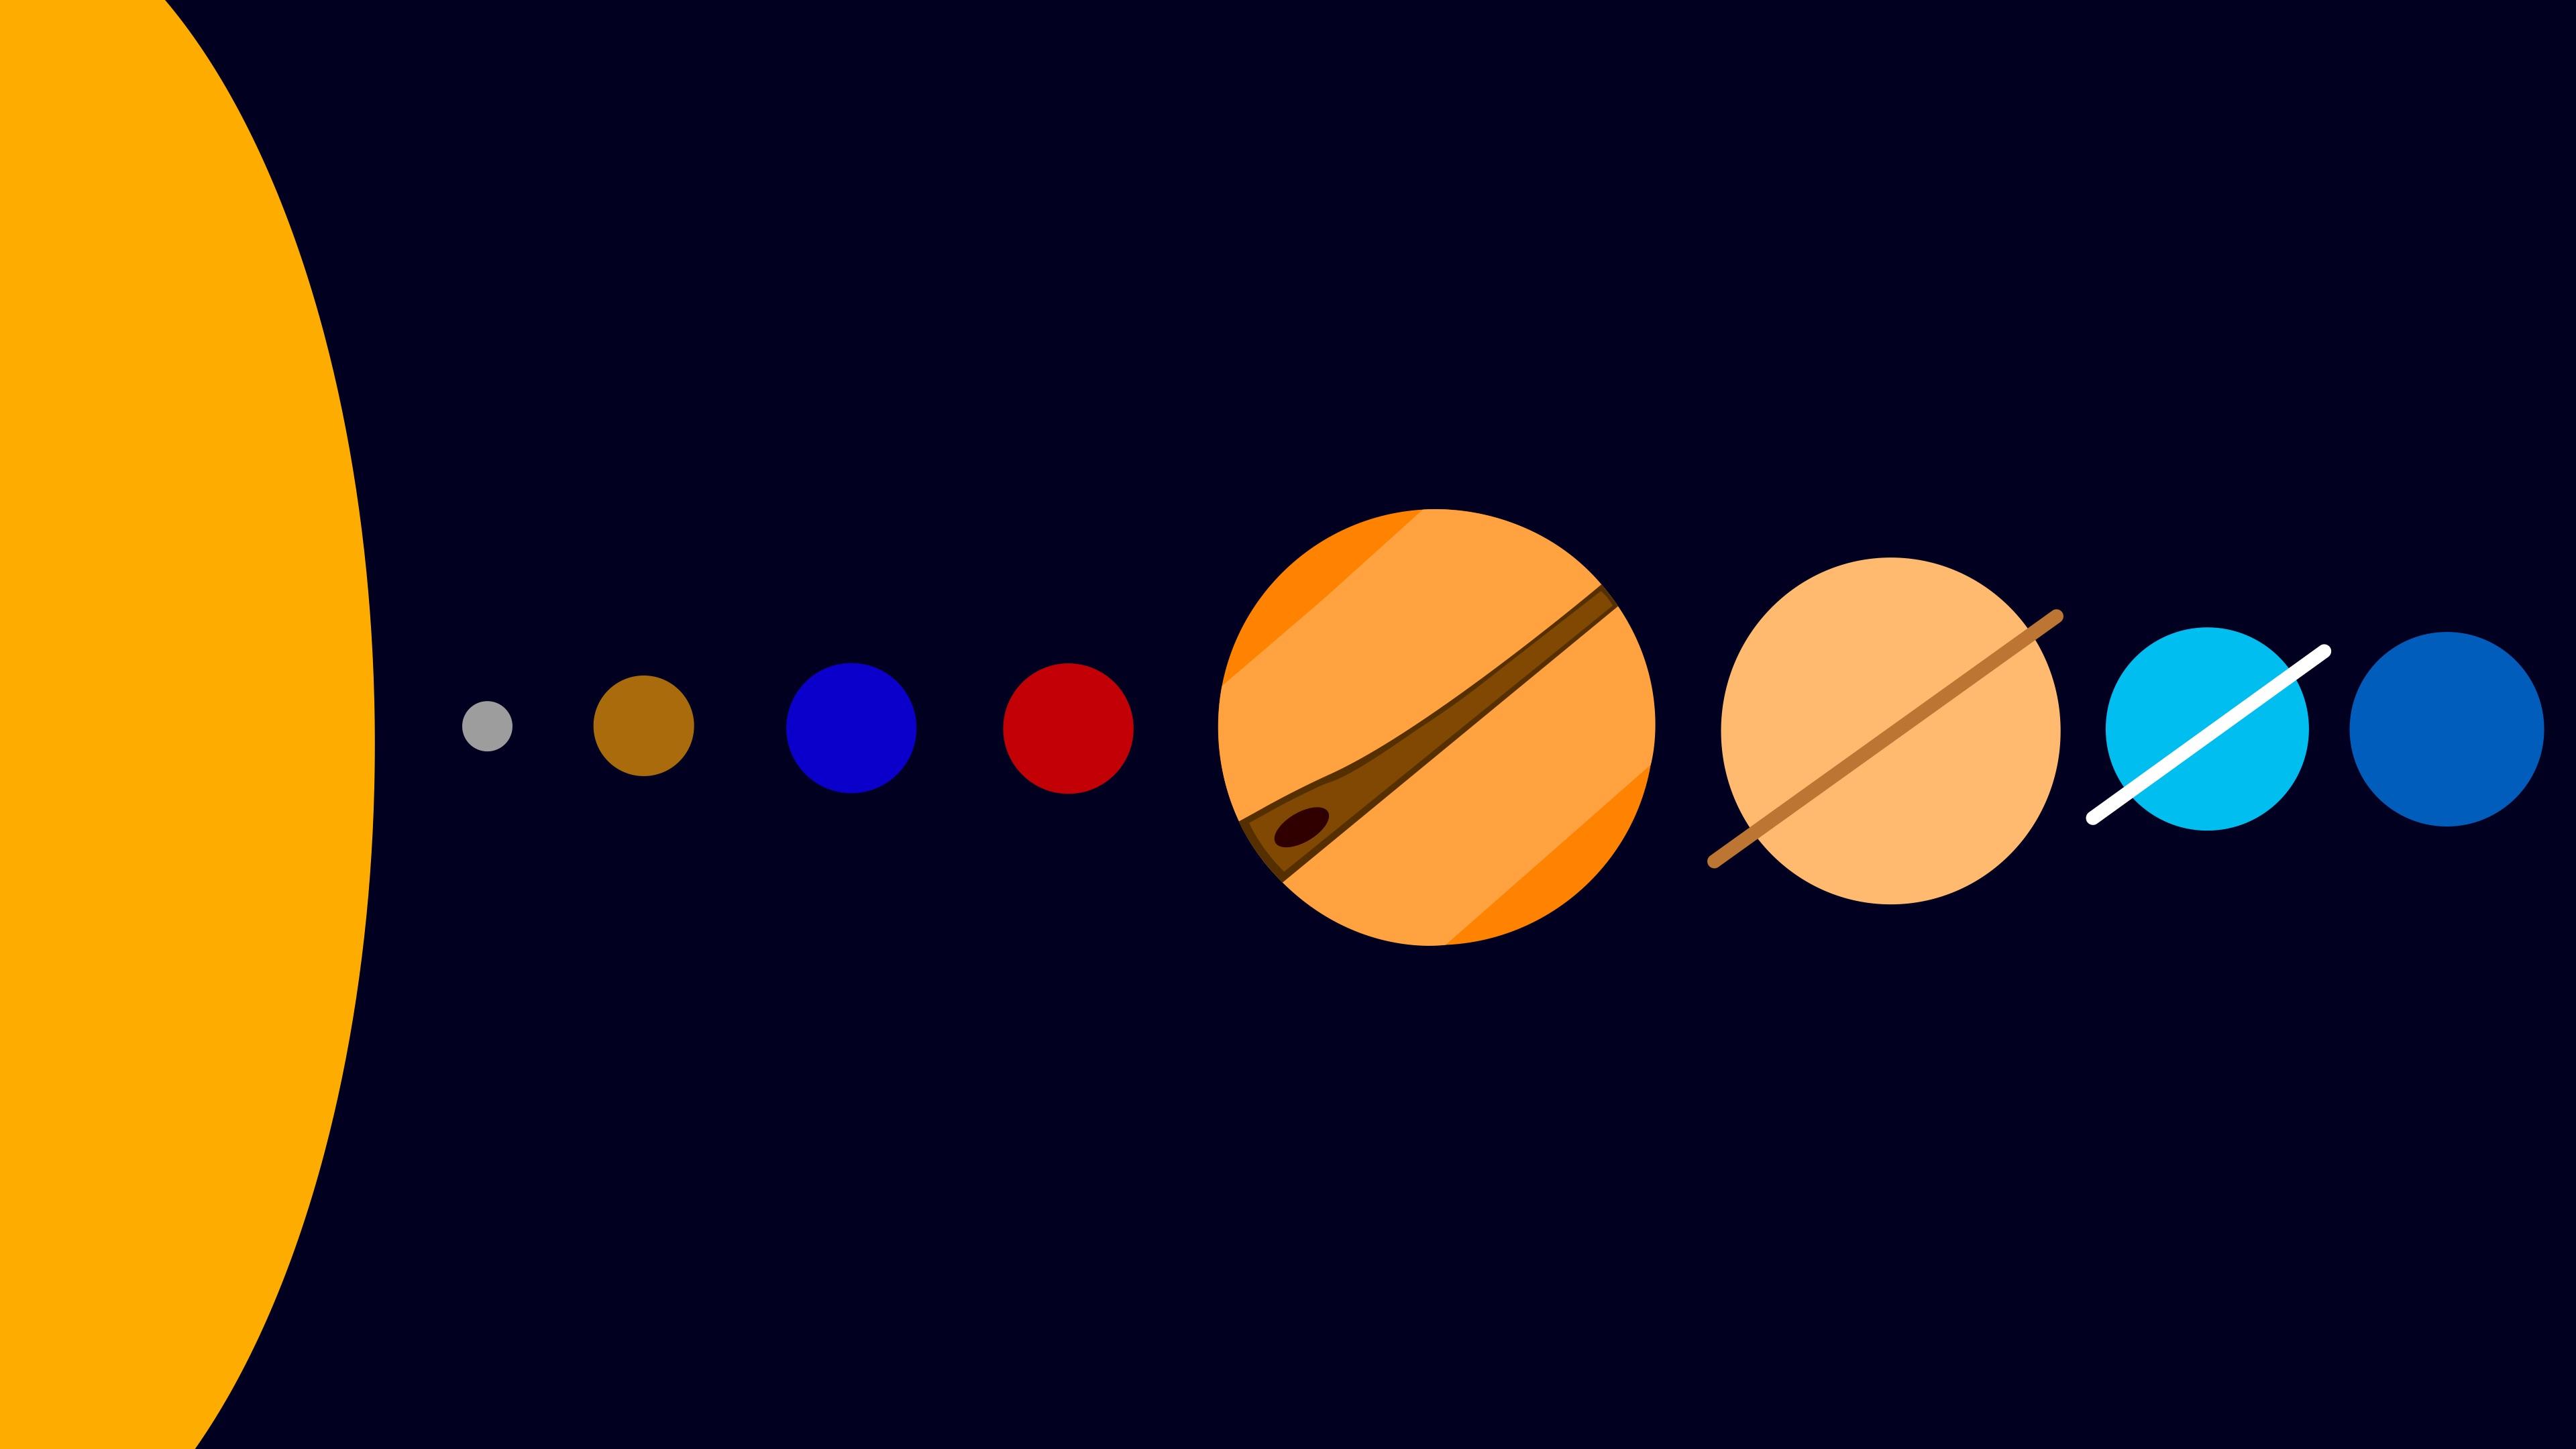 4k Solar System HD wallpaper